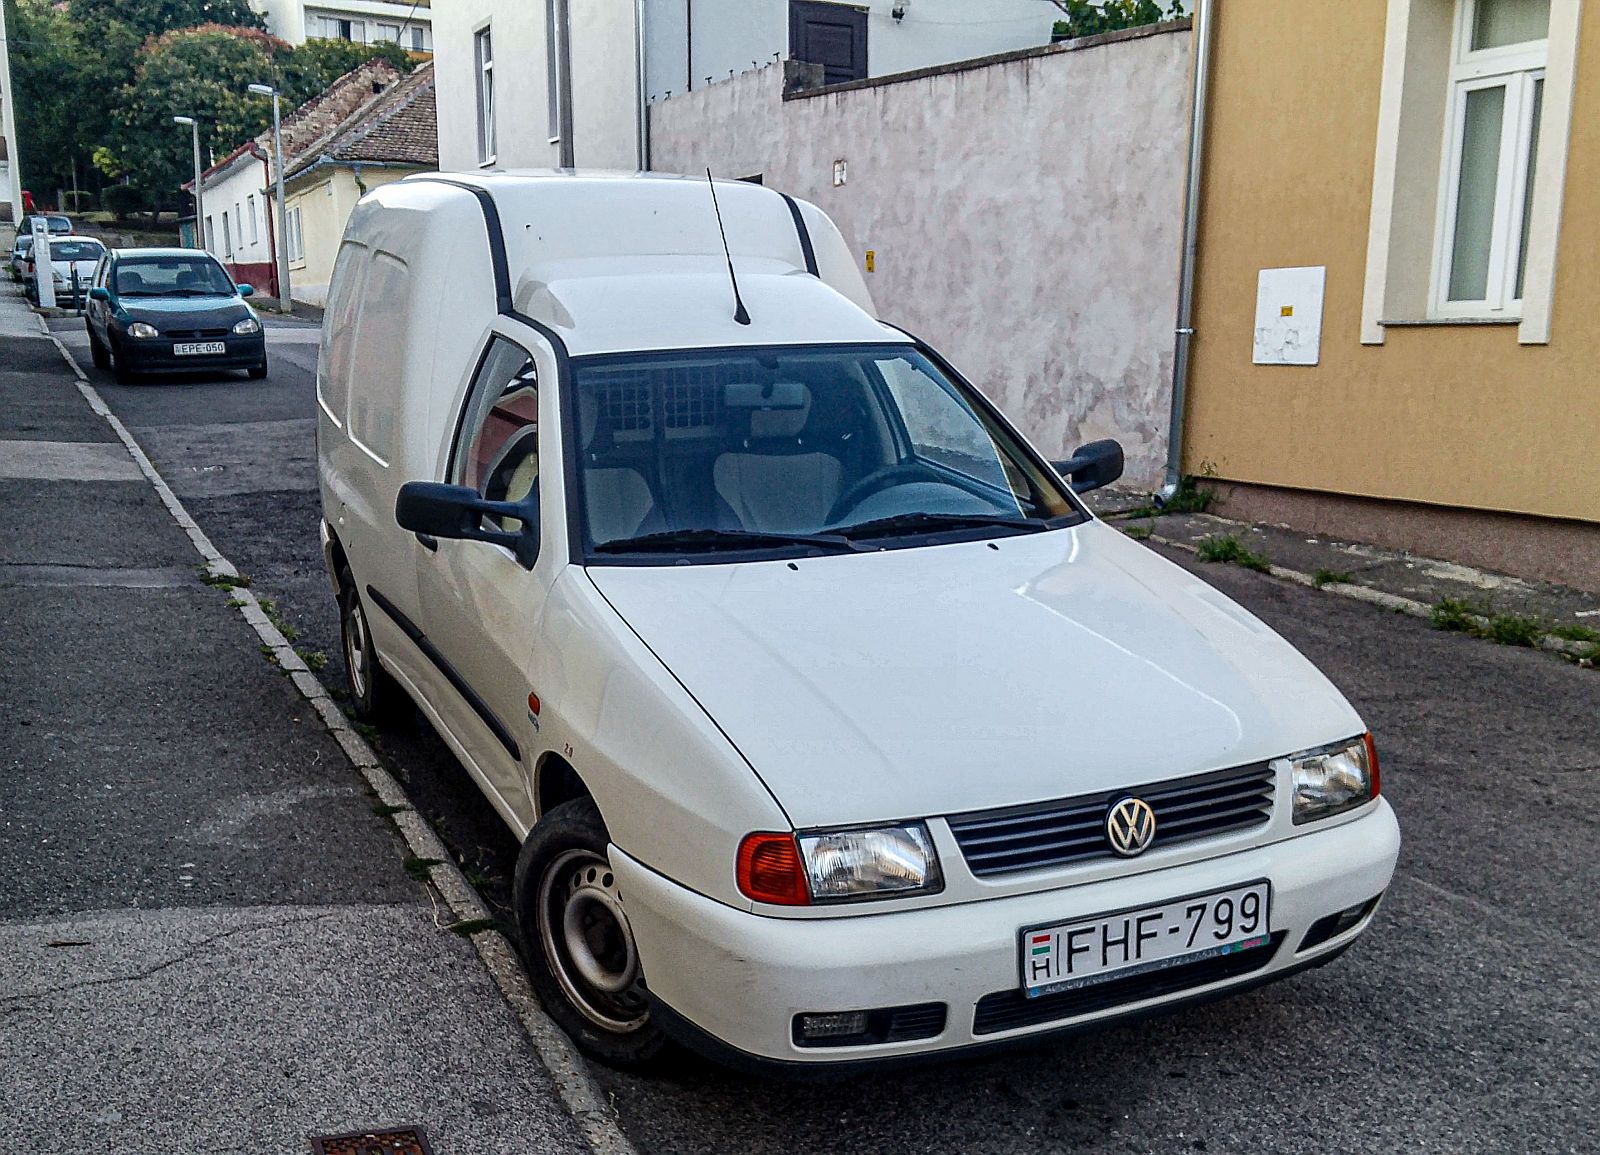 VW Caddy Mk2 (Basis: Polo Mk3) habe ich in August, 2021 aufgenommen.